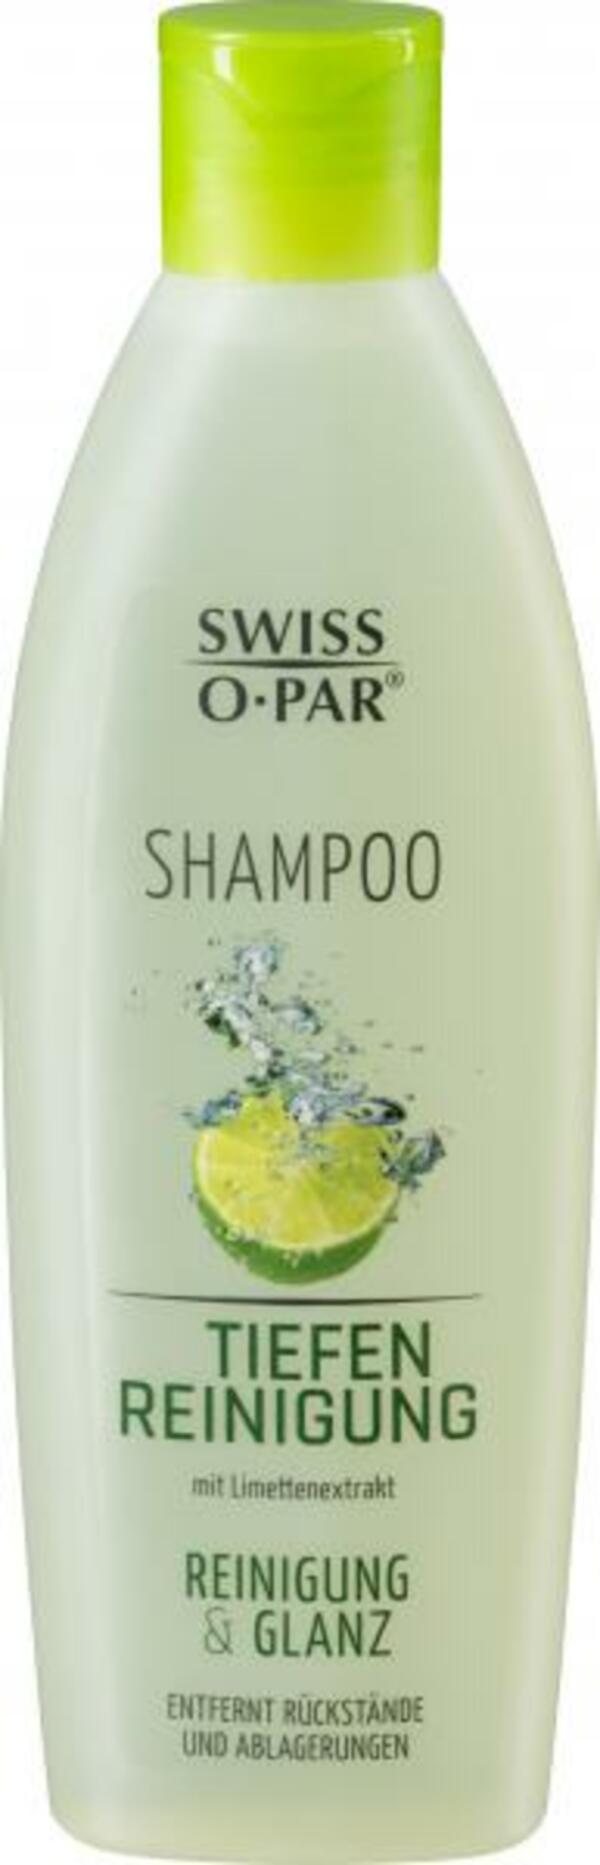 Bild 1 von Swiss-O-Par Tiefenreinigung Shampoo